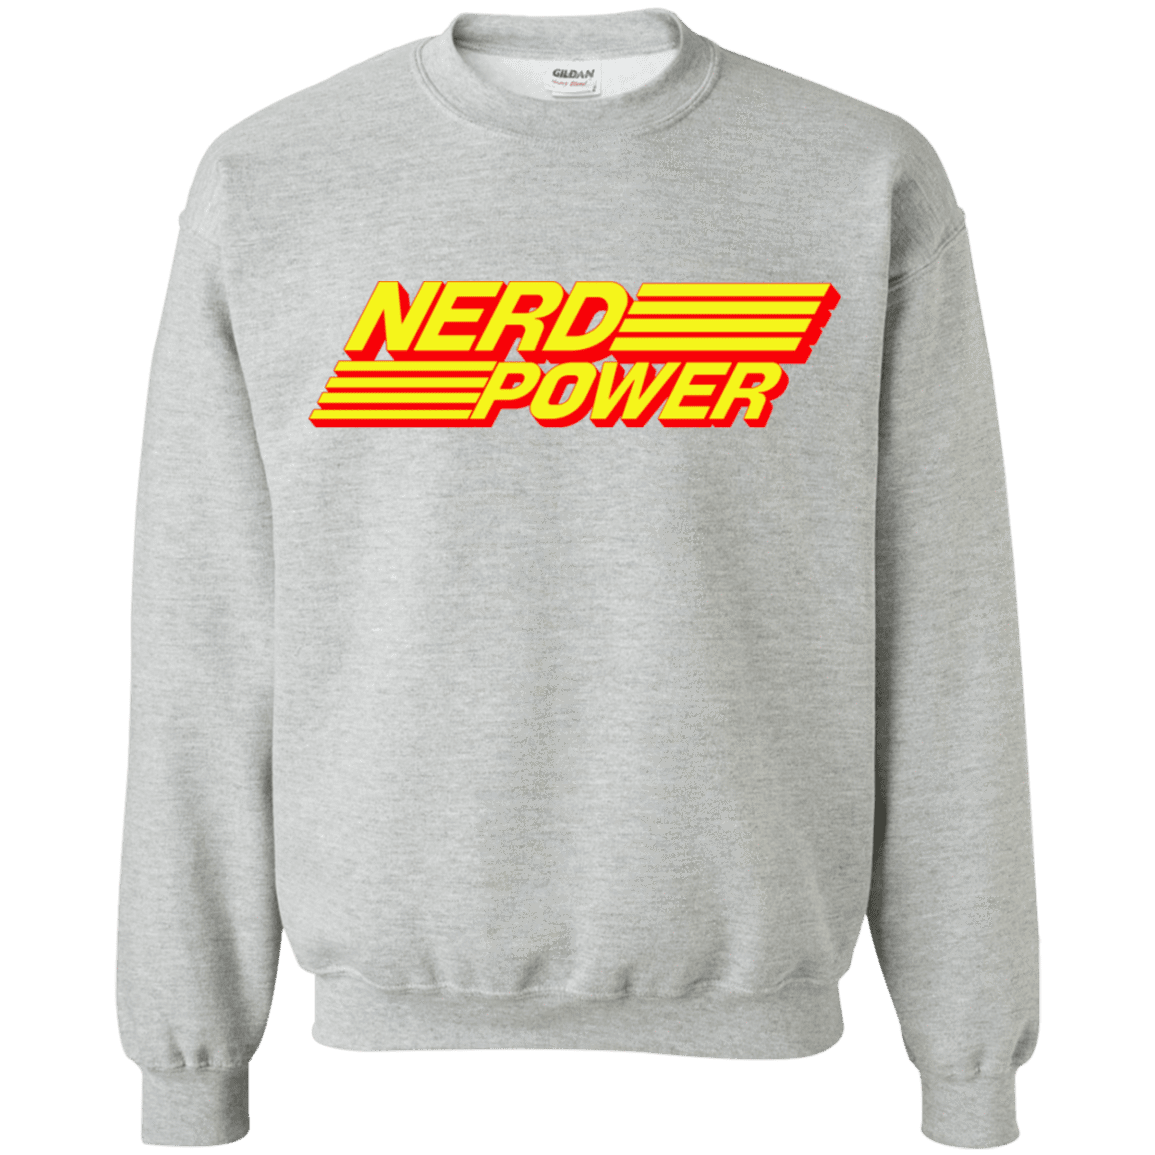 Sweatshirts Sport Grey / S Nerd Power Crewneck Sweatshirt